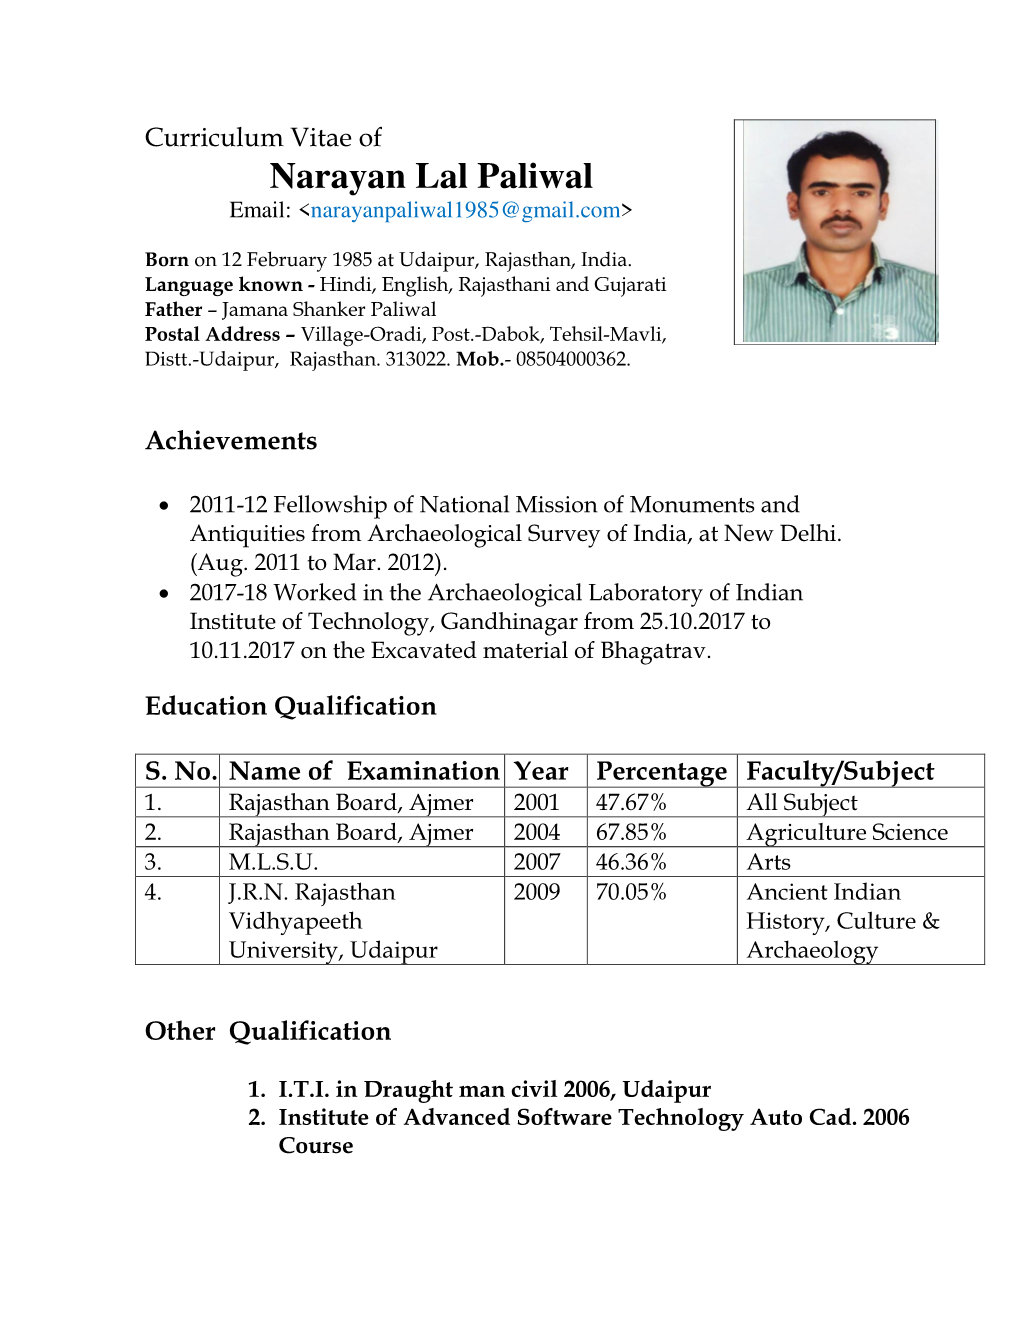 Narayan Lal Paliwal